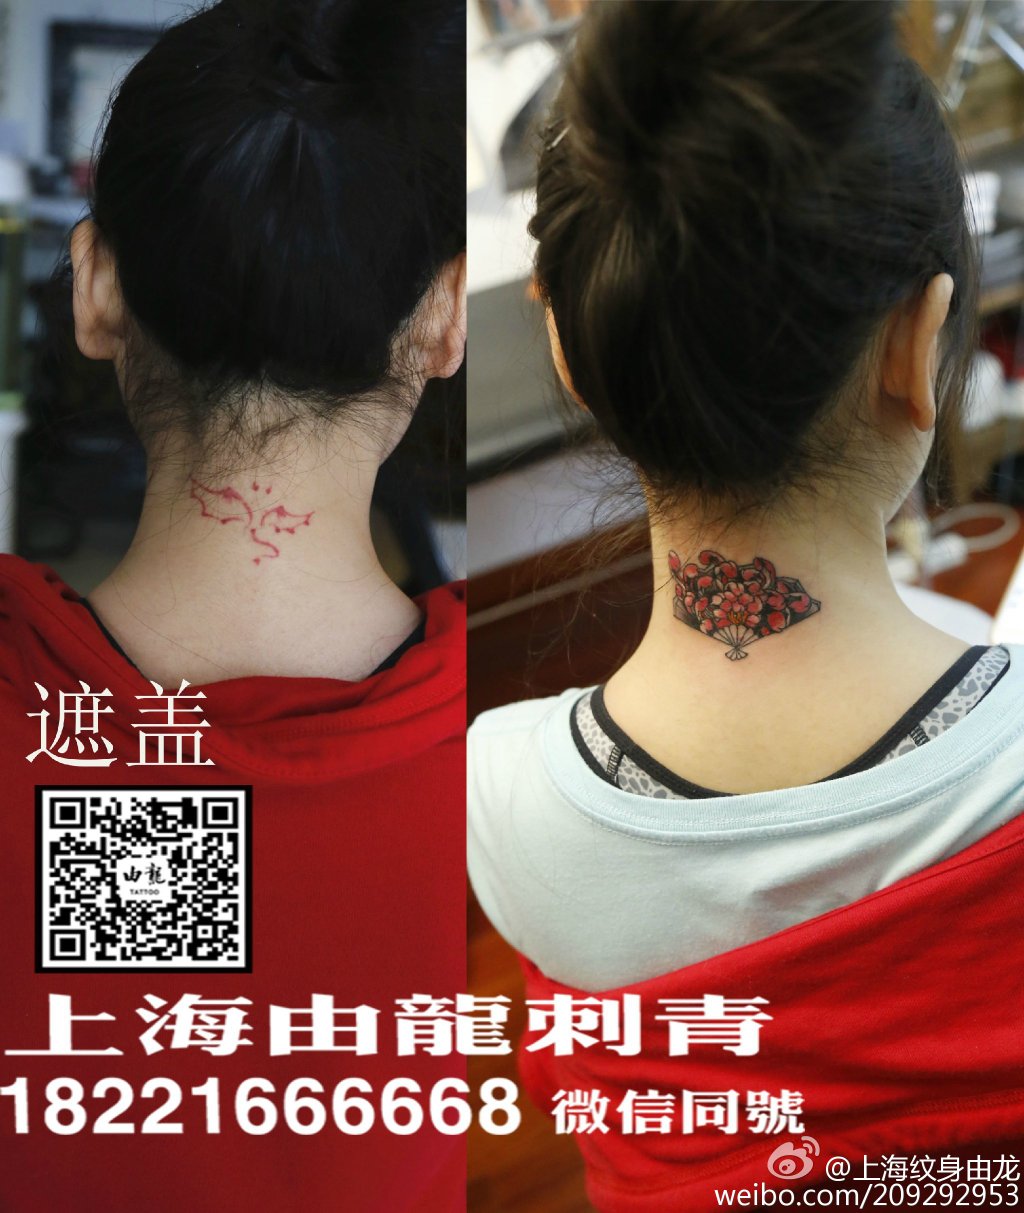 后颈纹身遮盖_上海纹身 上海纹身店 上海由龙纹身2号